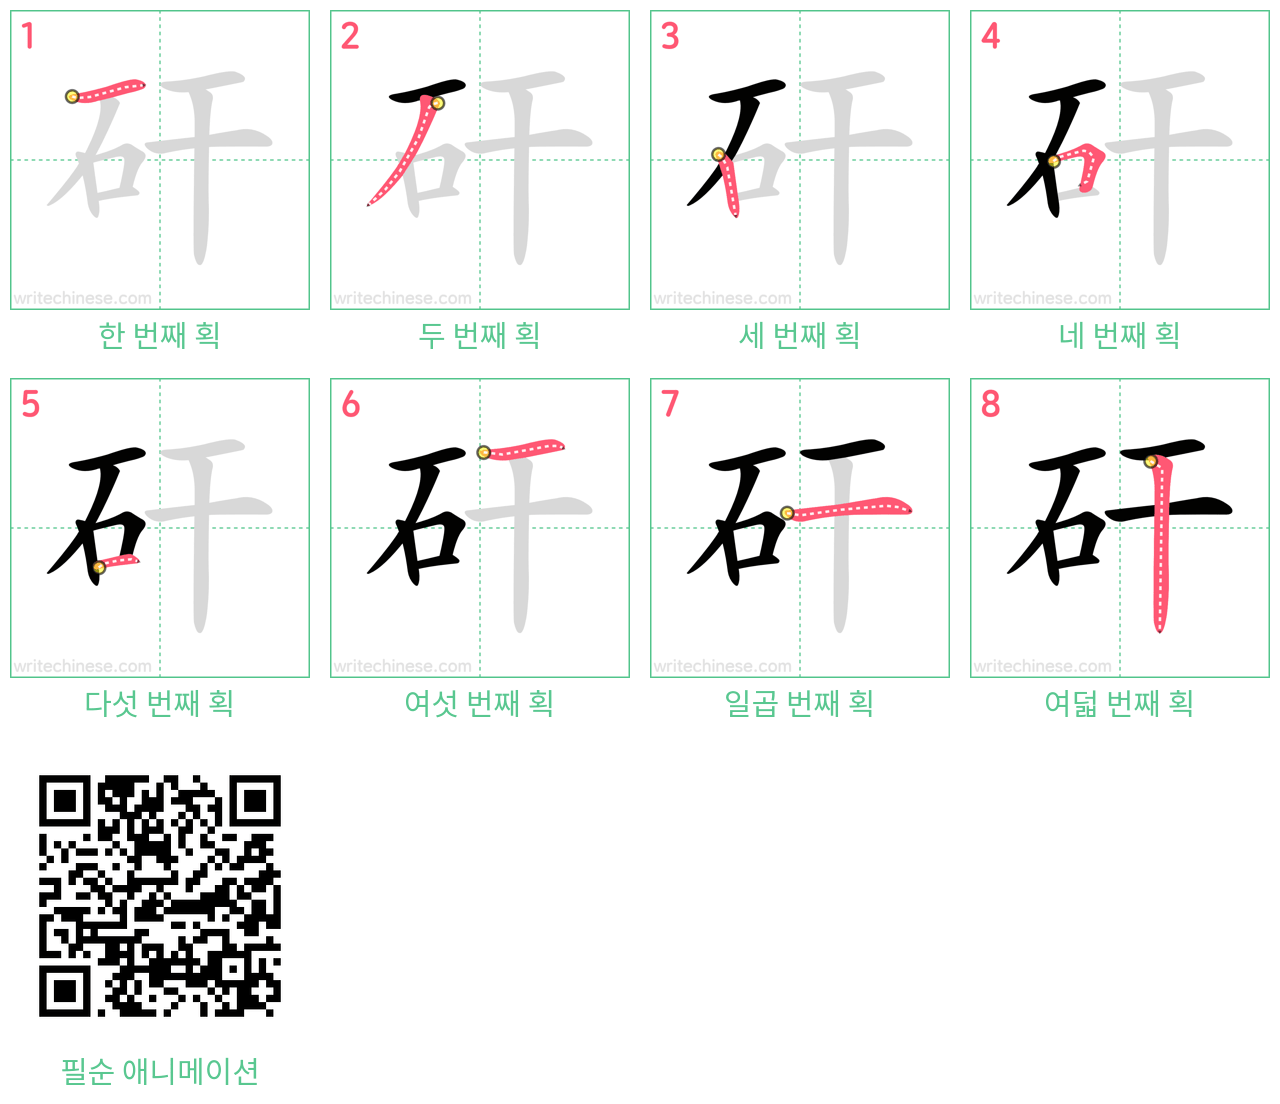 矸 step-by-step stroke order diagrams